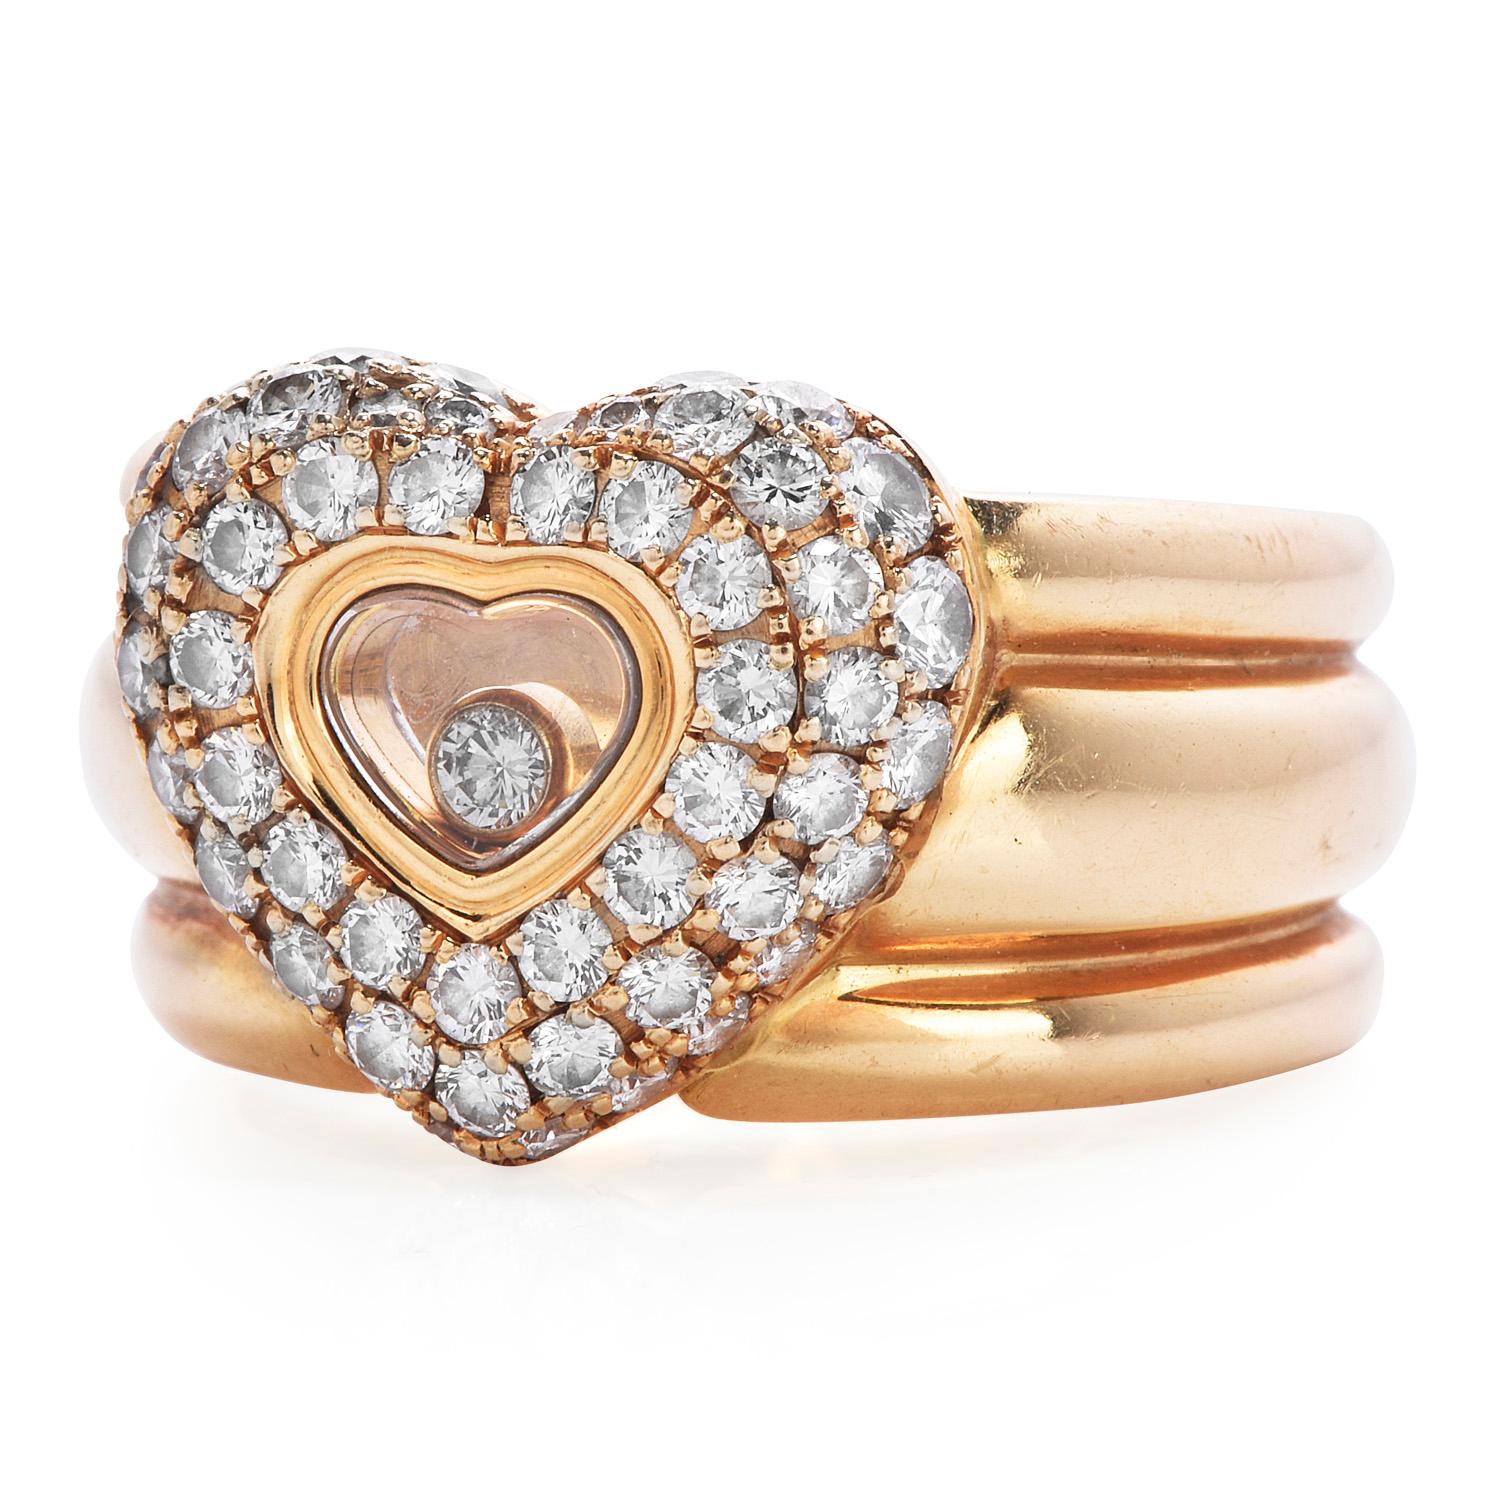 Questo anello a fascia larga con motivo a cuore è uno squisito pezzo da collezione della Maison Chopard e della sua caratteristica collezione 